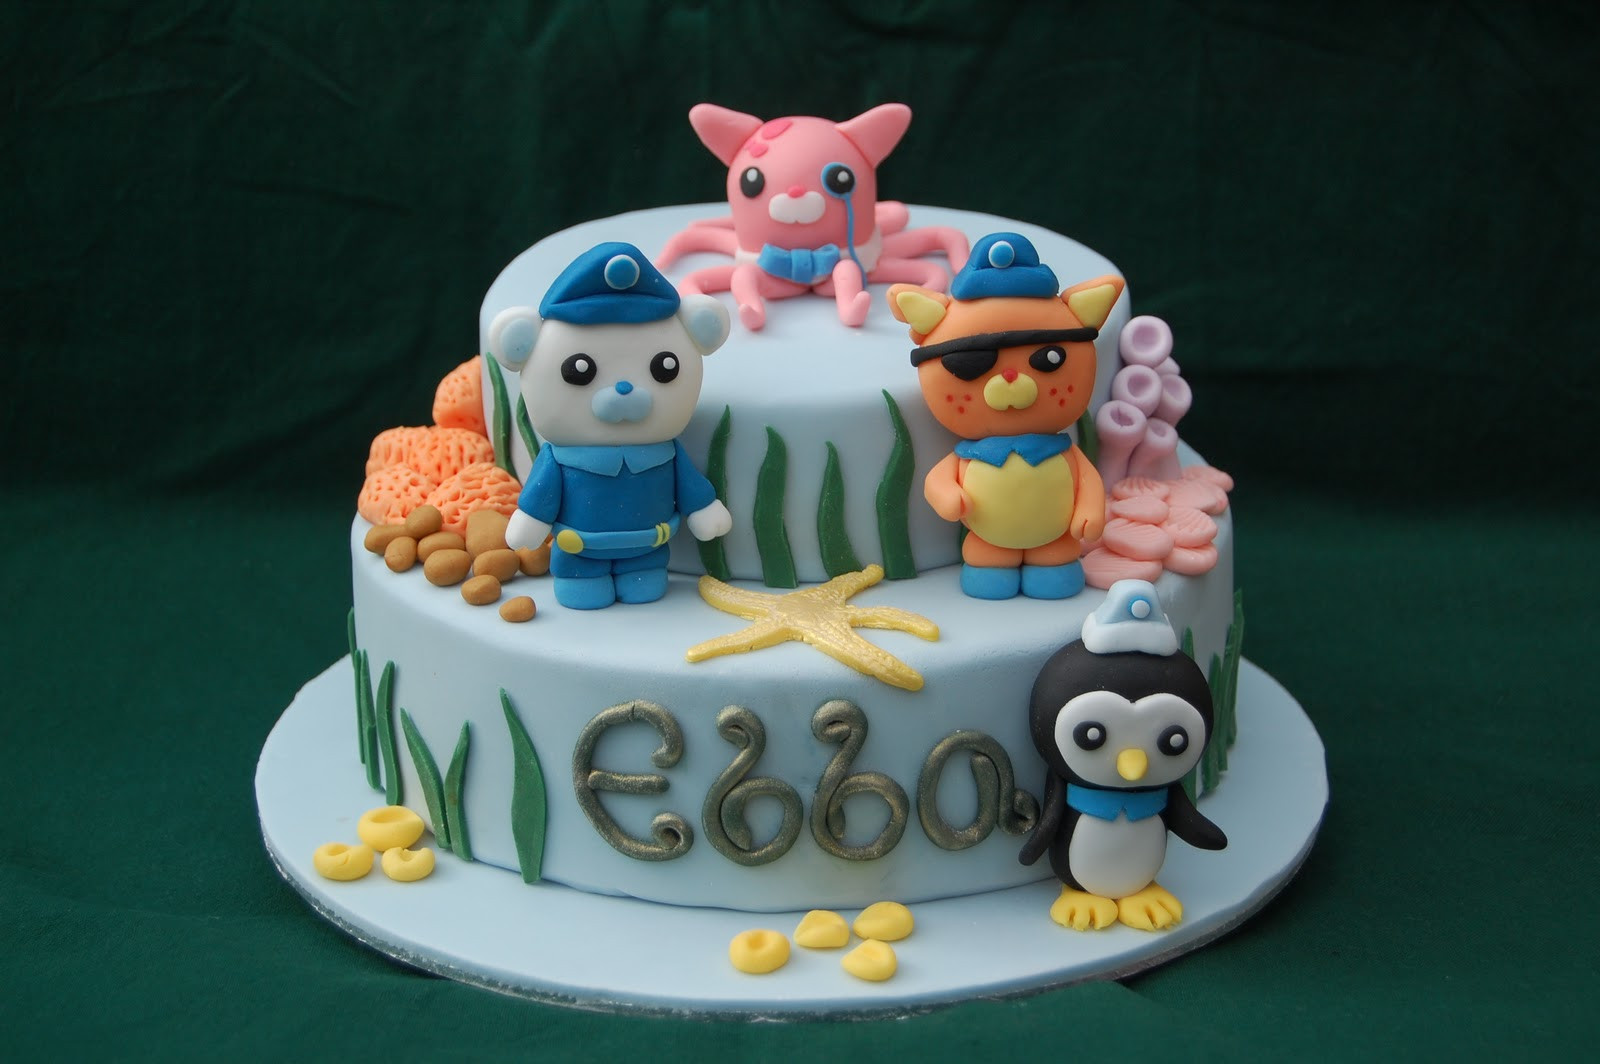 Octonauts Birthday Cake
 Explore Rescue Protect an Octonauts Birthday Cake